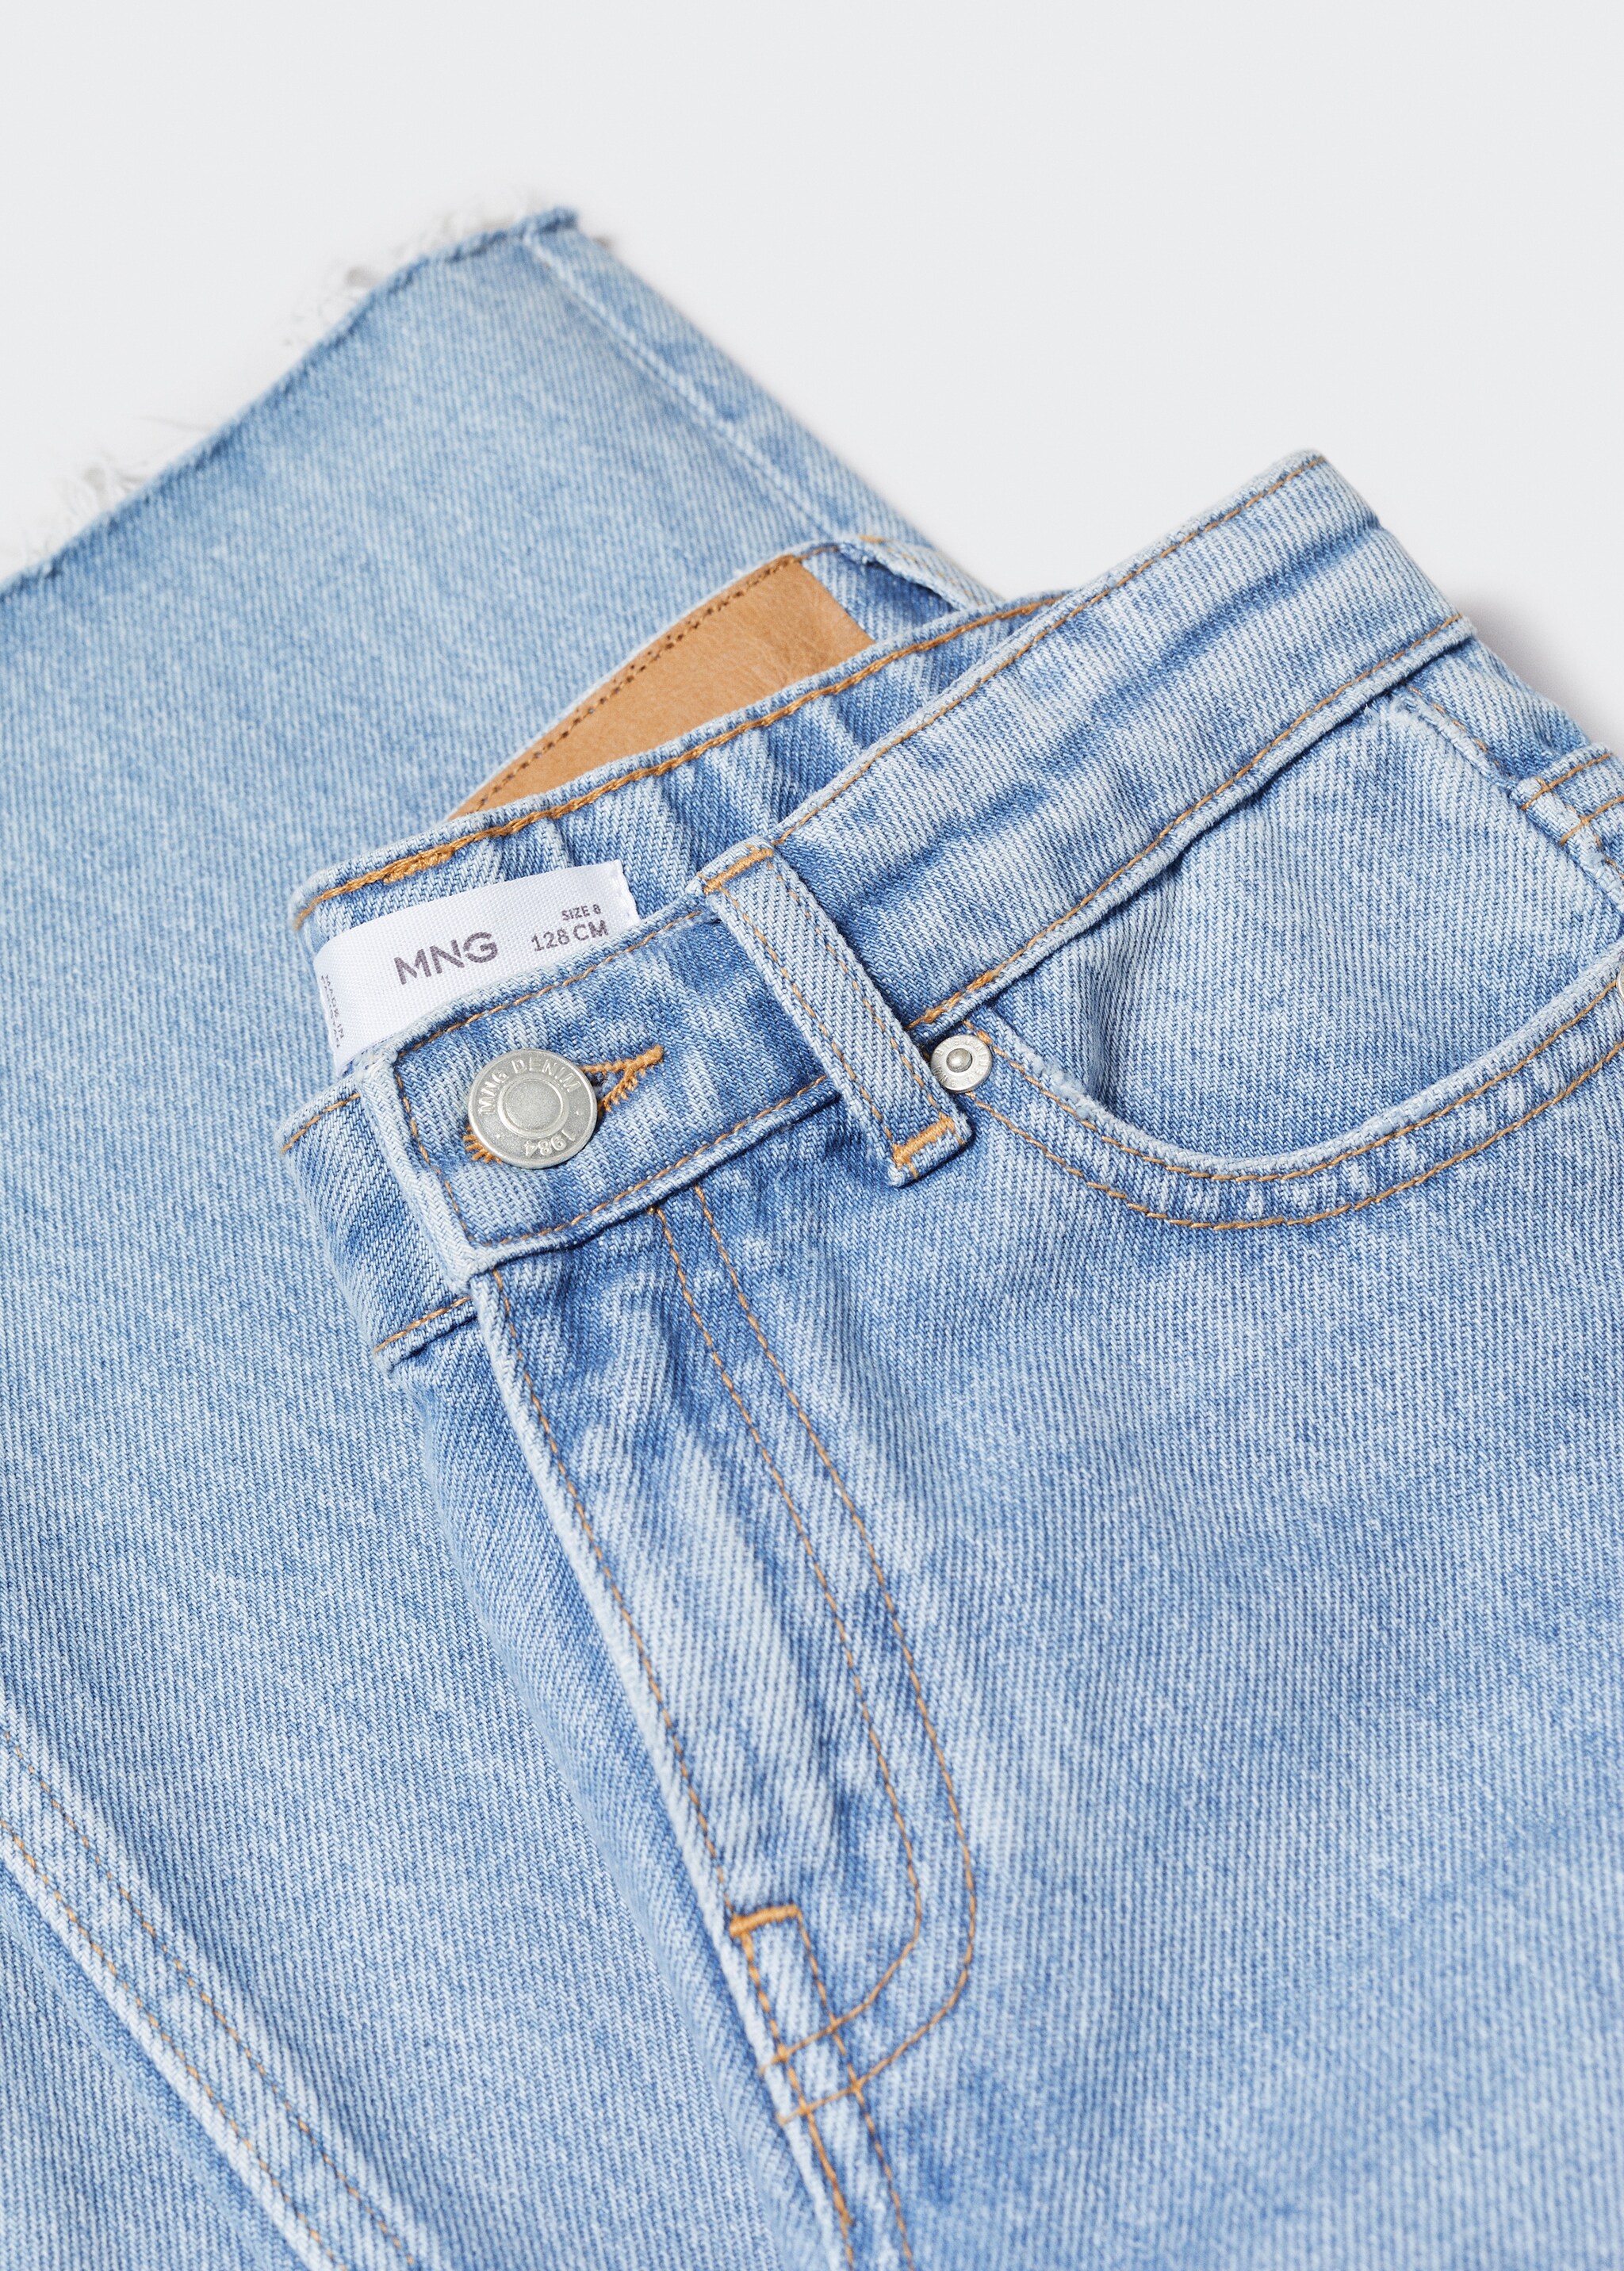 Jeans wideleg rotos decorativos - Detalle del artículo 8